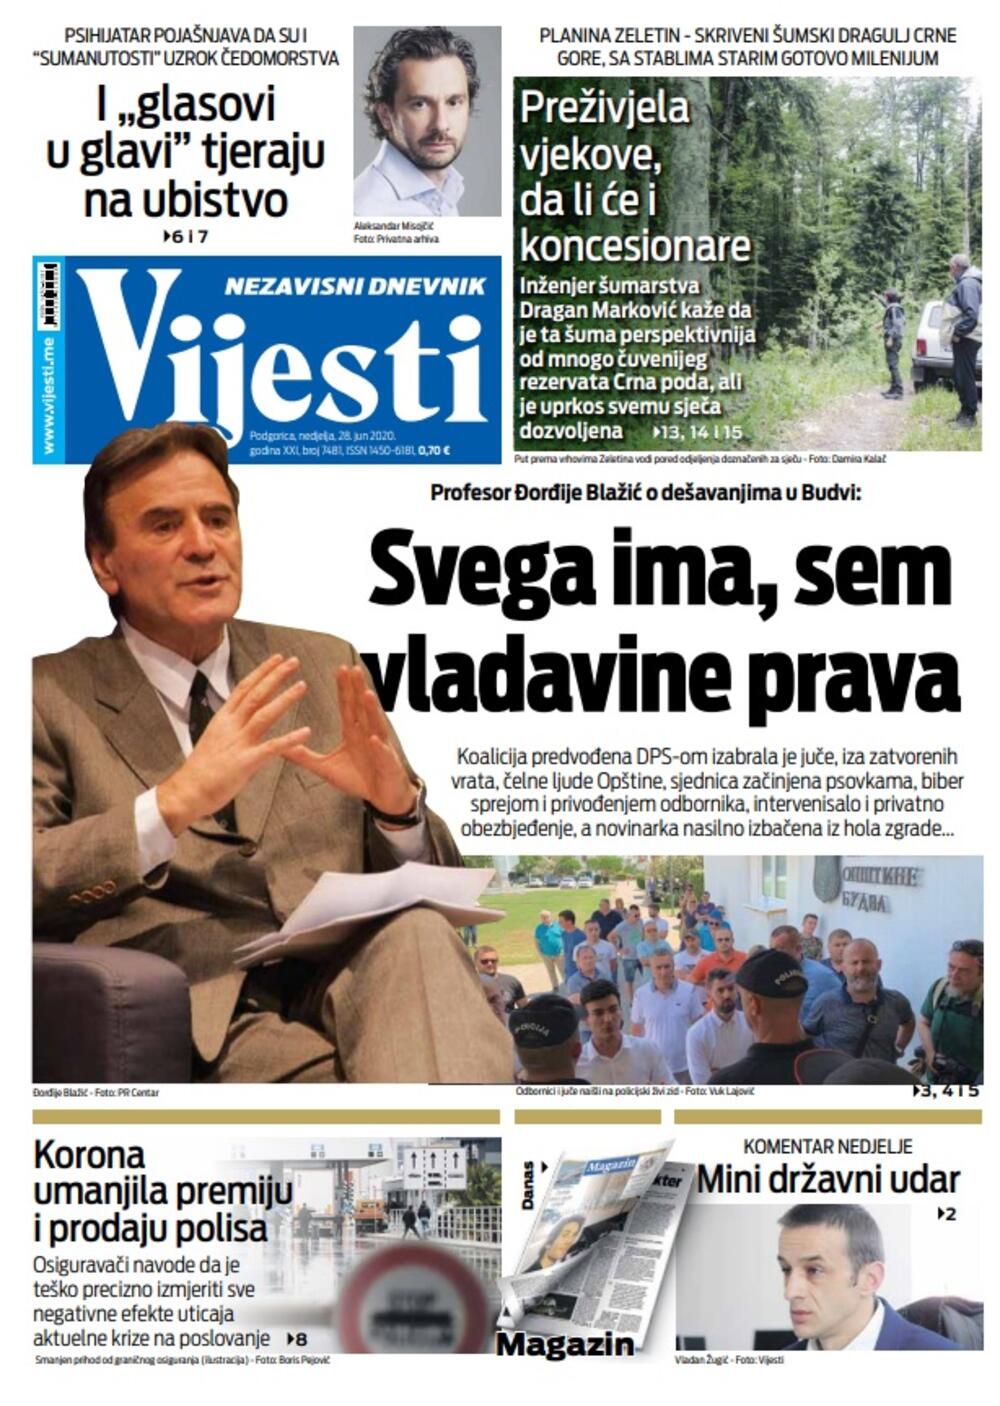 Naslovna strana "Vijesti" za nedjelju 28. jun 2020., Foto: Vijesti